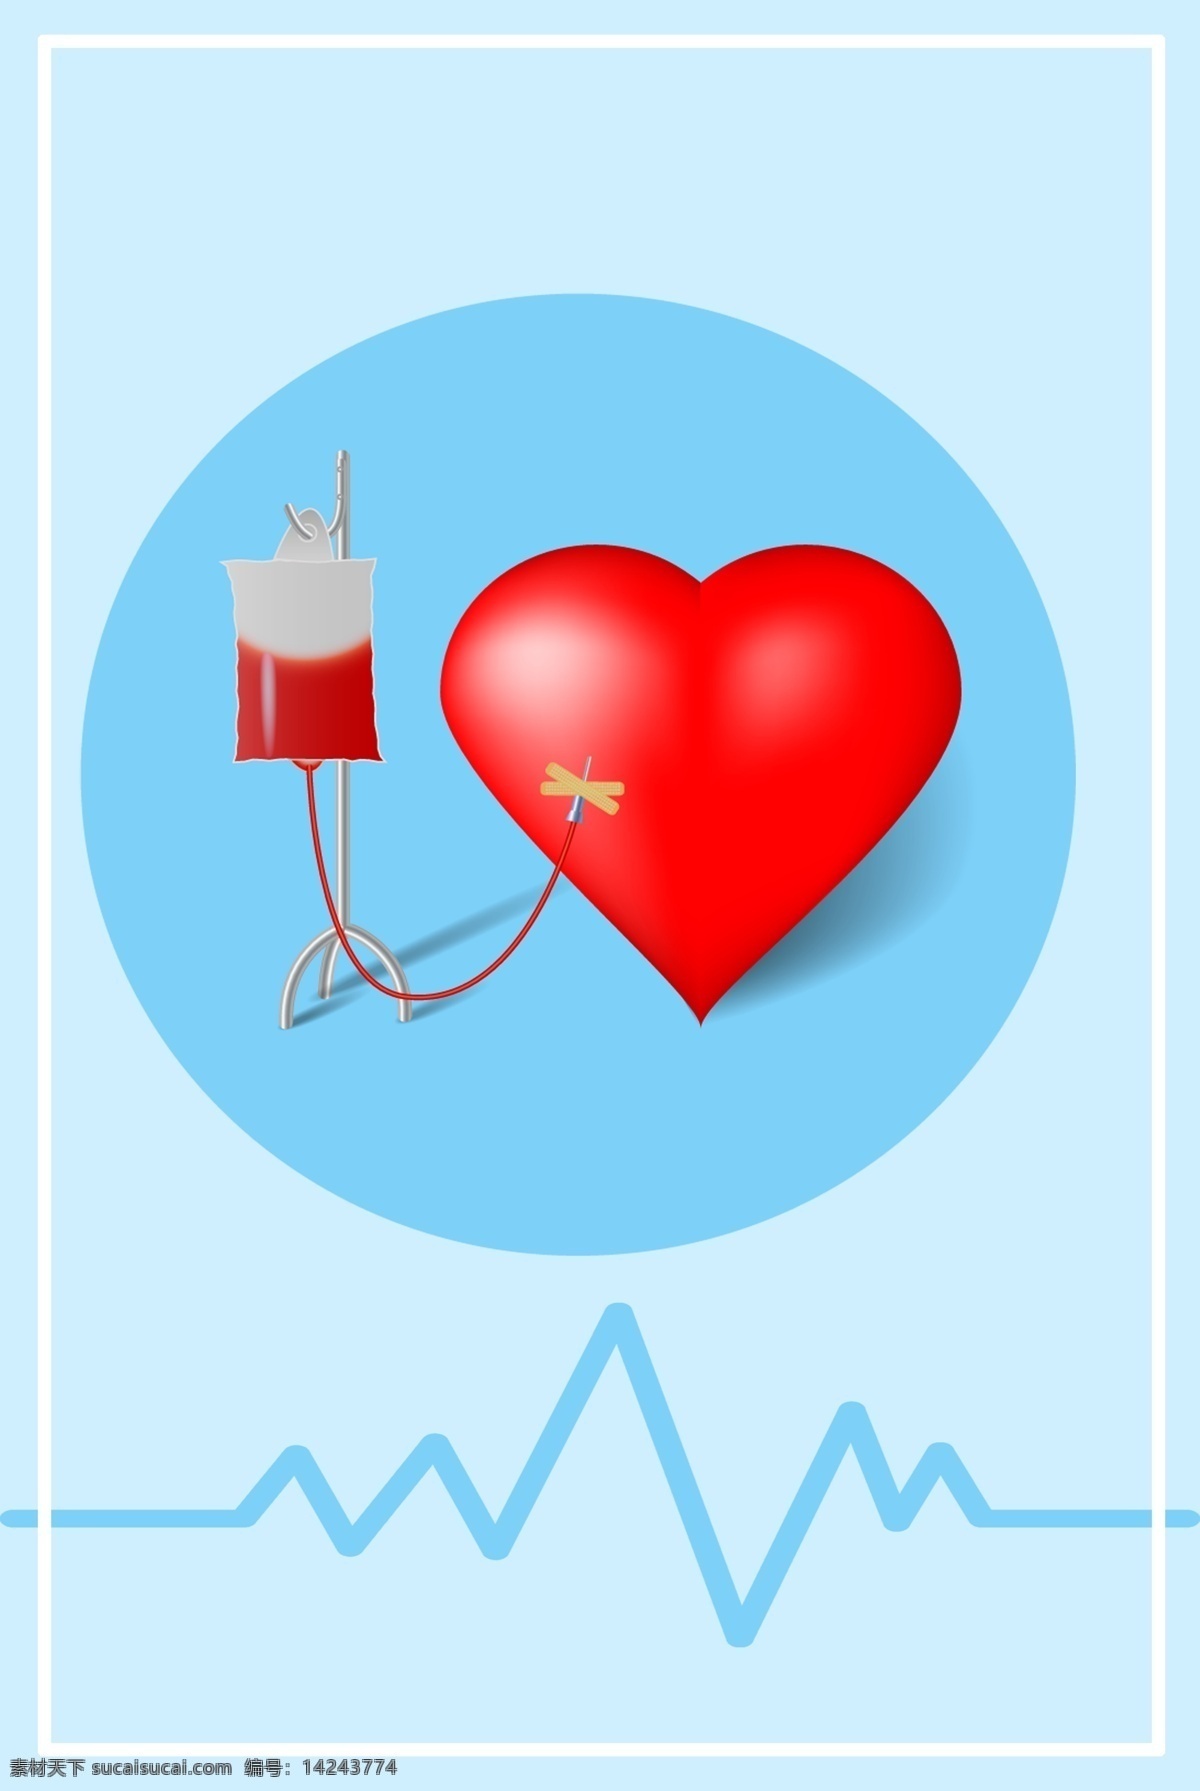 蓝色 简约 医疗 心脏 保护 广告 背景